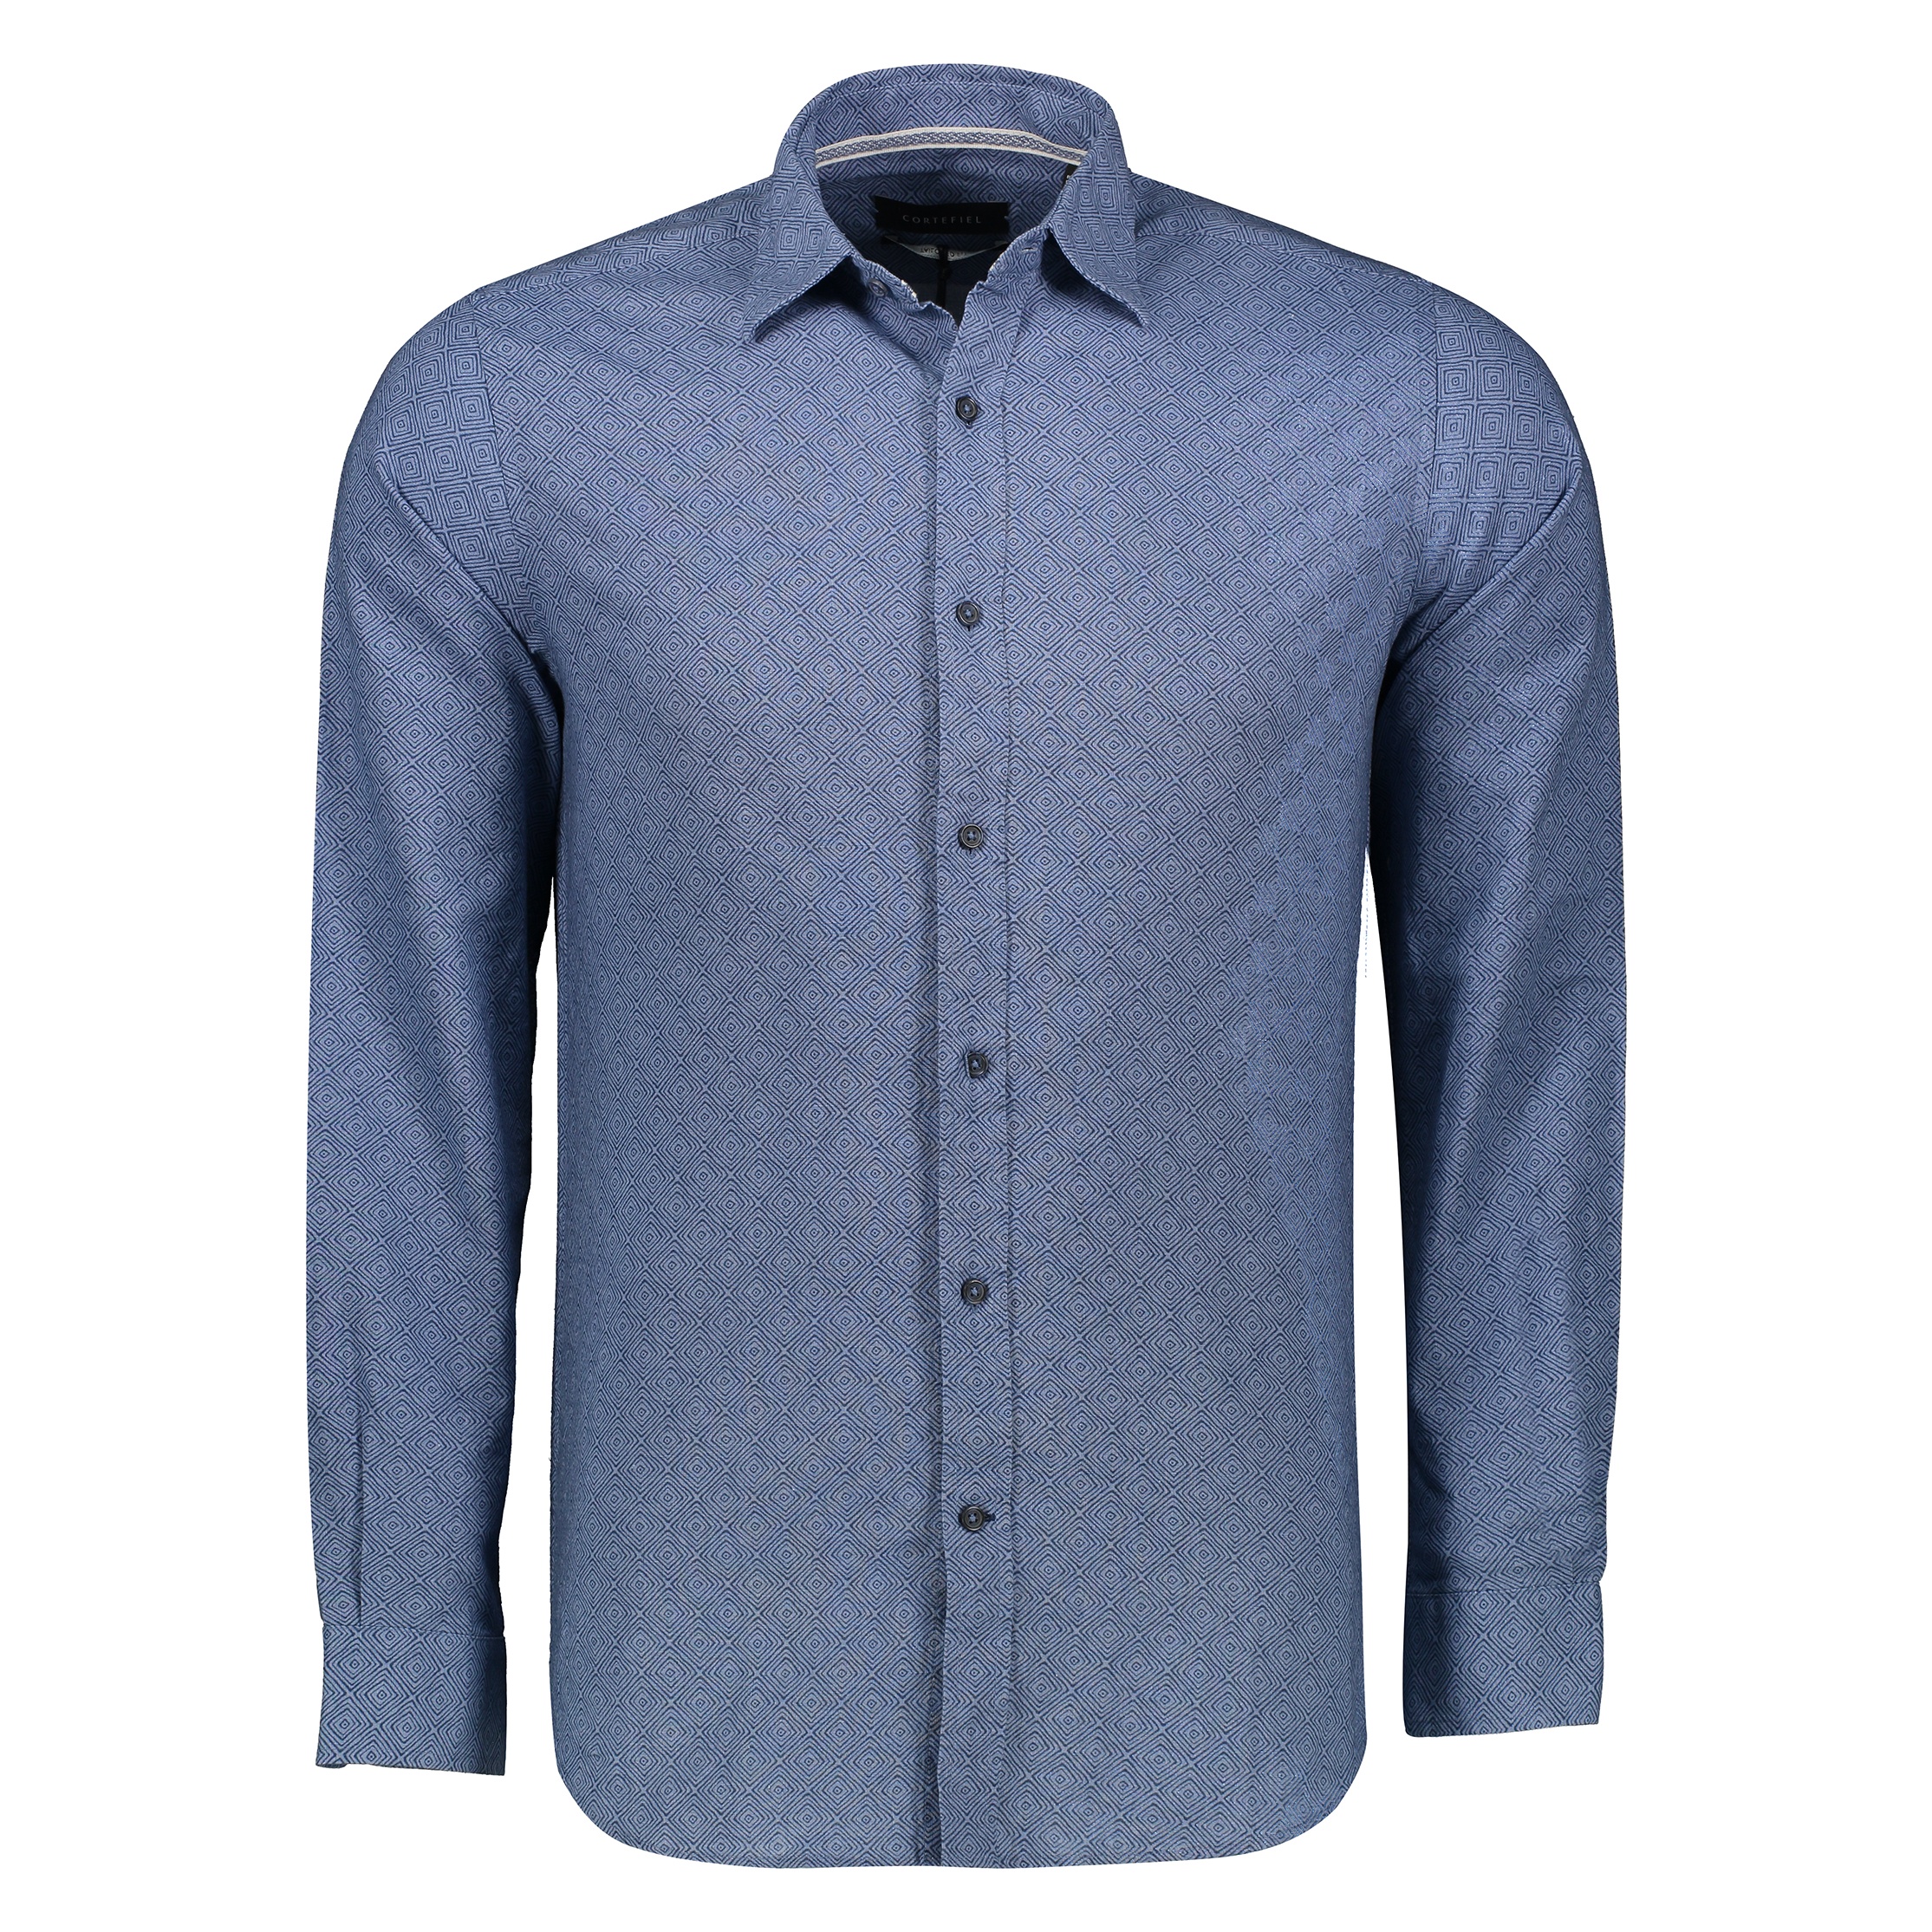 پیراهن مردانه کورتفیل مدل 2217120-19 - آبی - 1